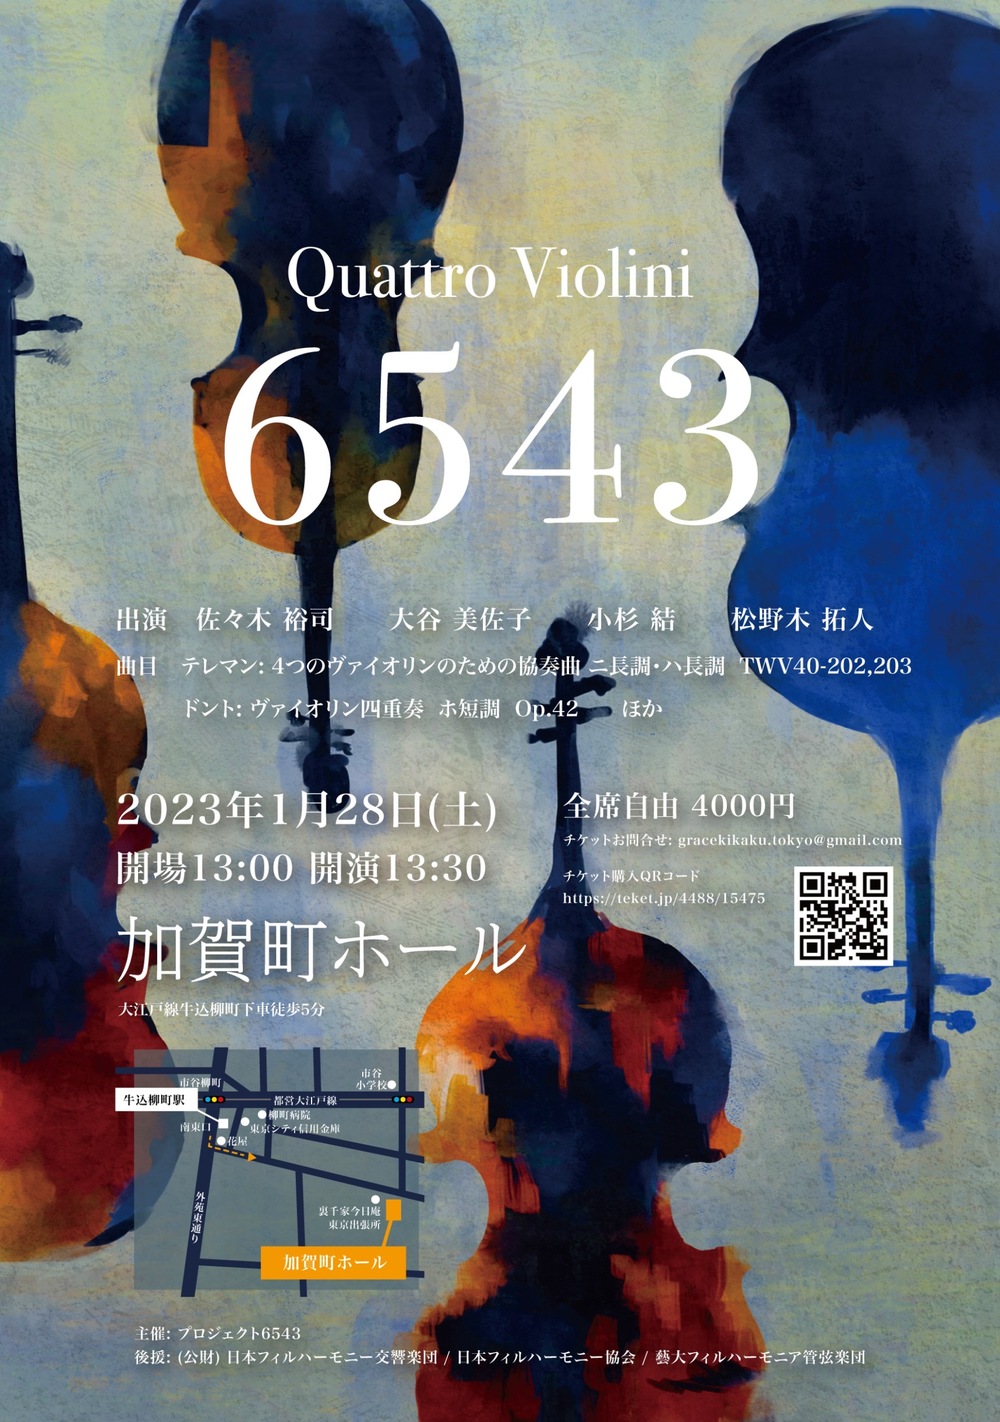 Quattro Violini 6543【Quattro Violini 6543】 | 加賀町ホール